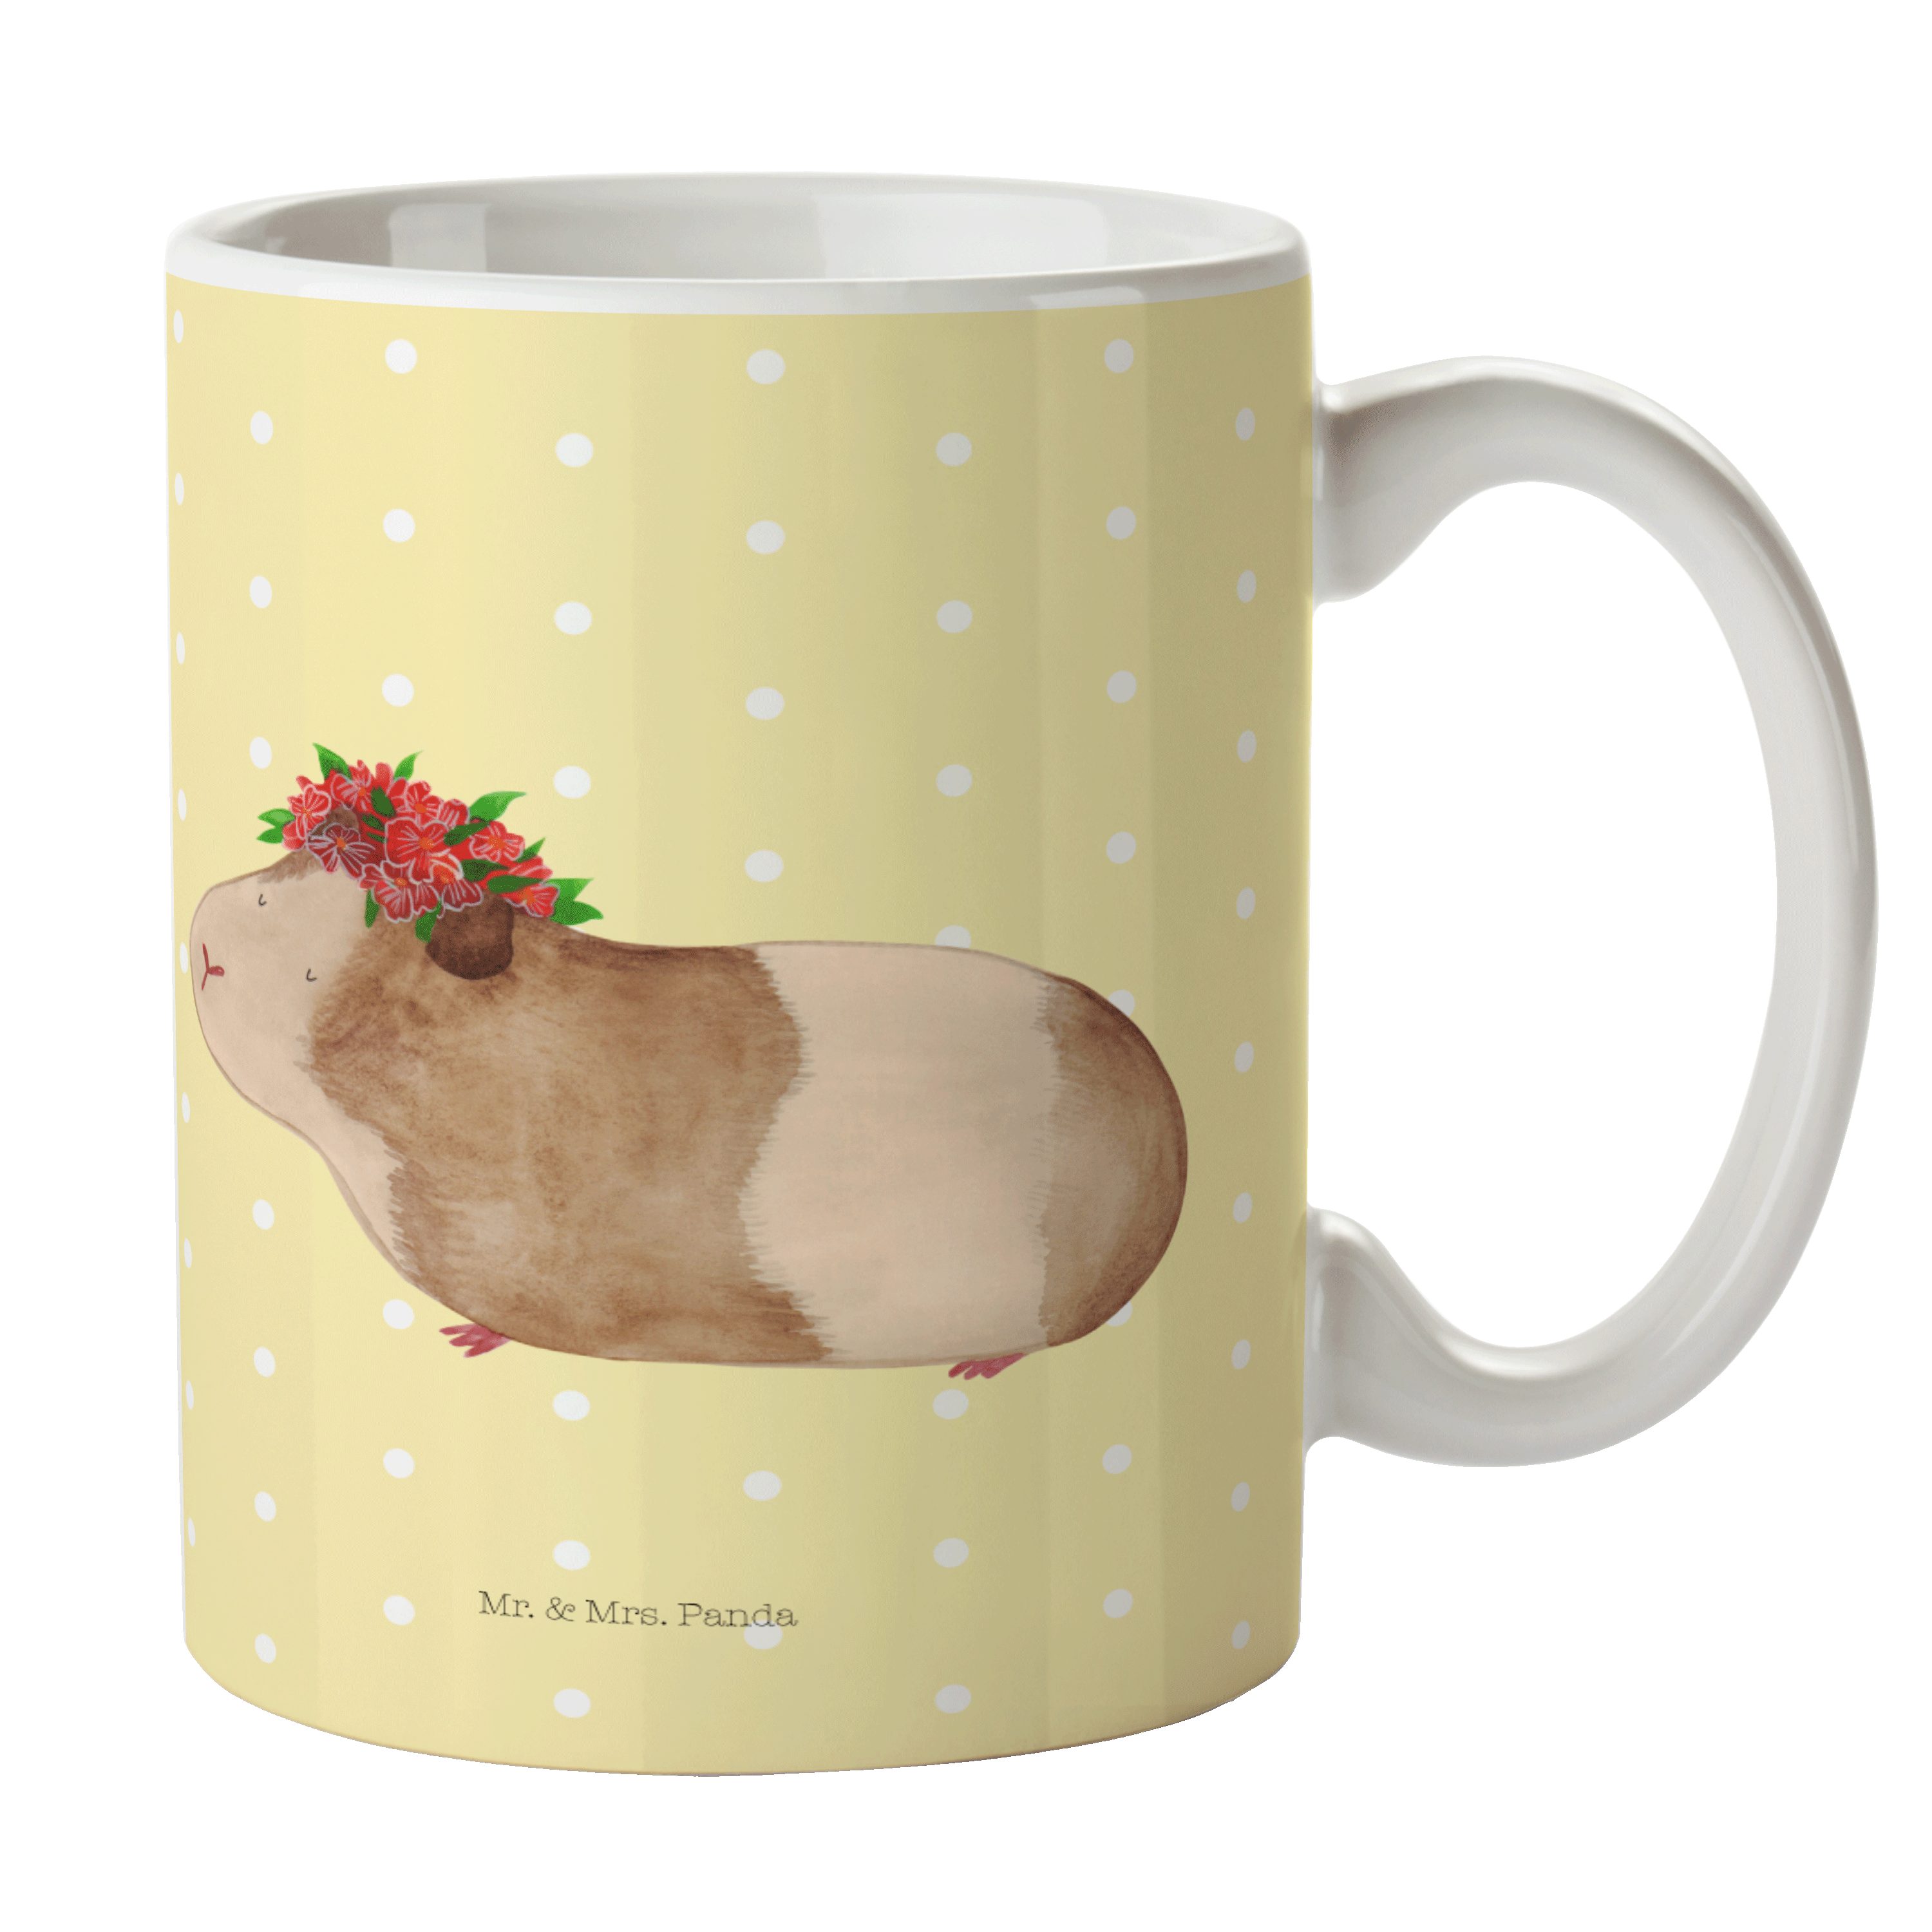 Mr. & Mrs. Panda Tasse Meerschweinchen weise - Gelb Pastell - Geschenk, Porzellantasse, Tier, Keramik